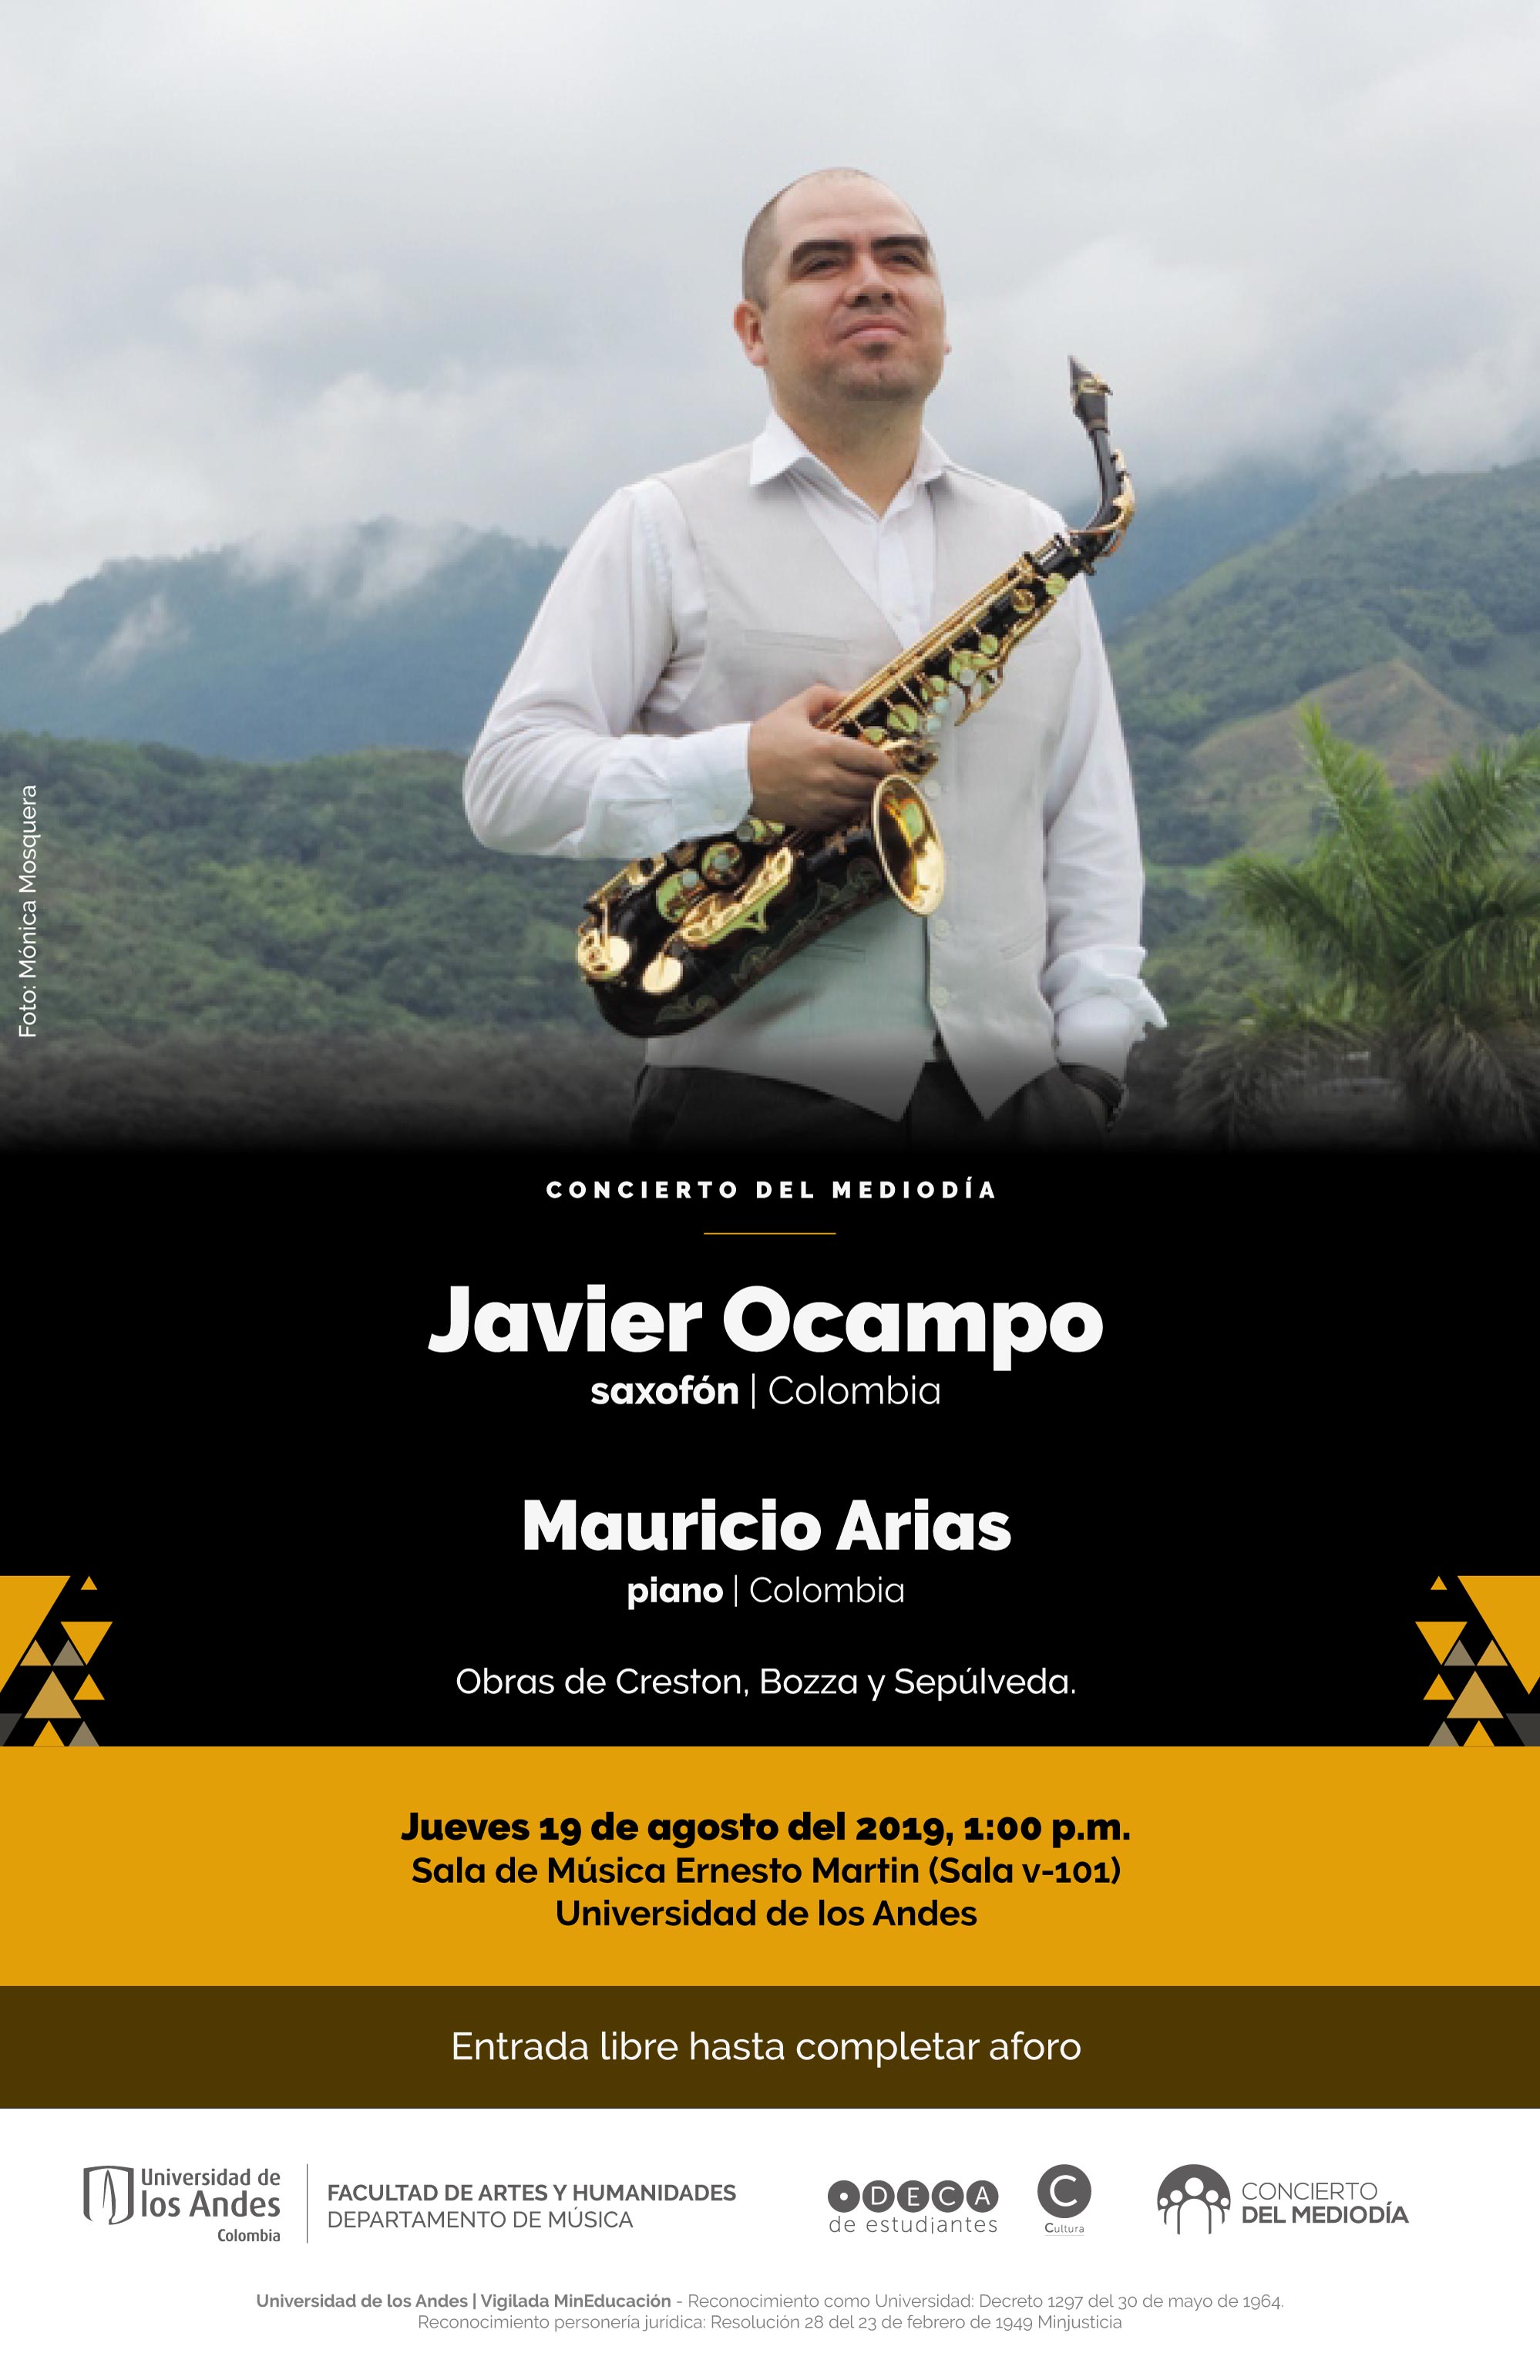 Concierto del Mediodía: Javier Ocampo (saxofón) y Mauricio Arias (piano)